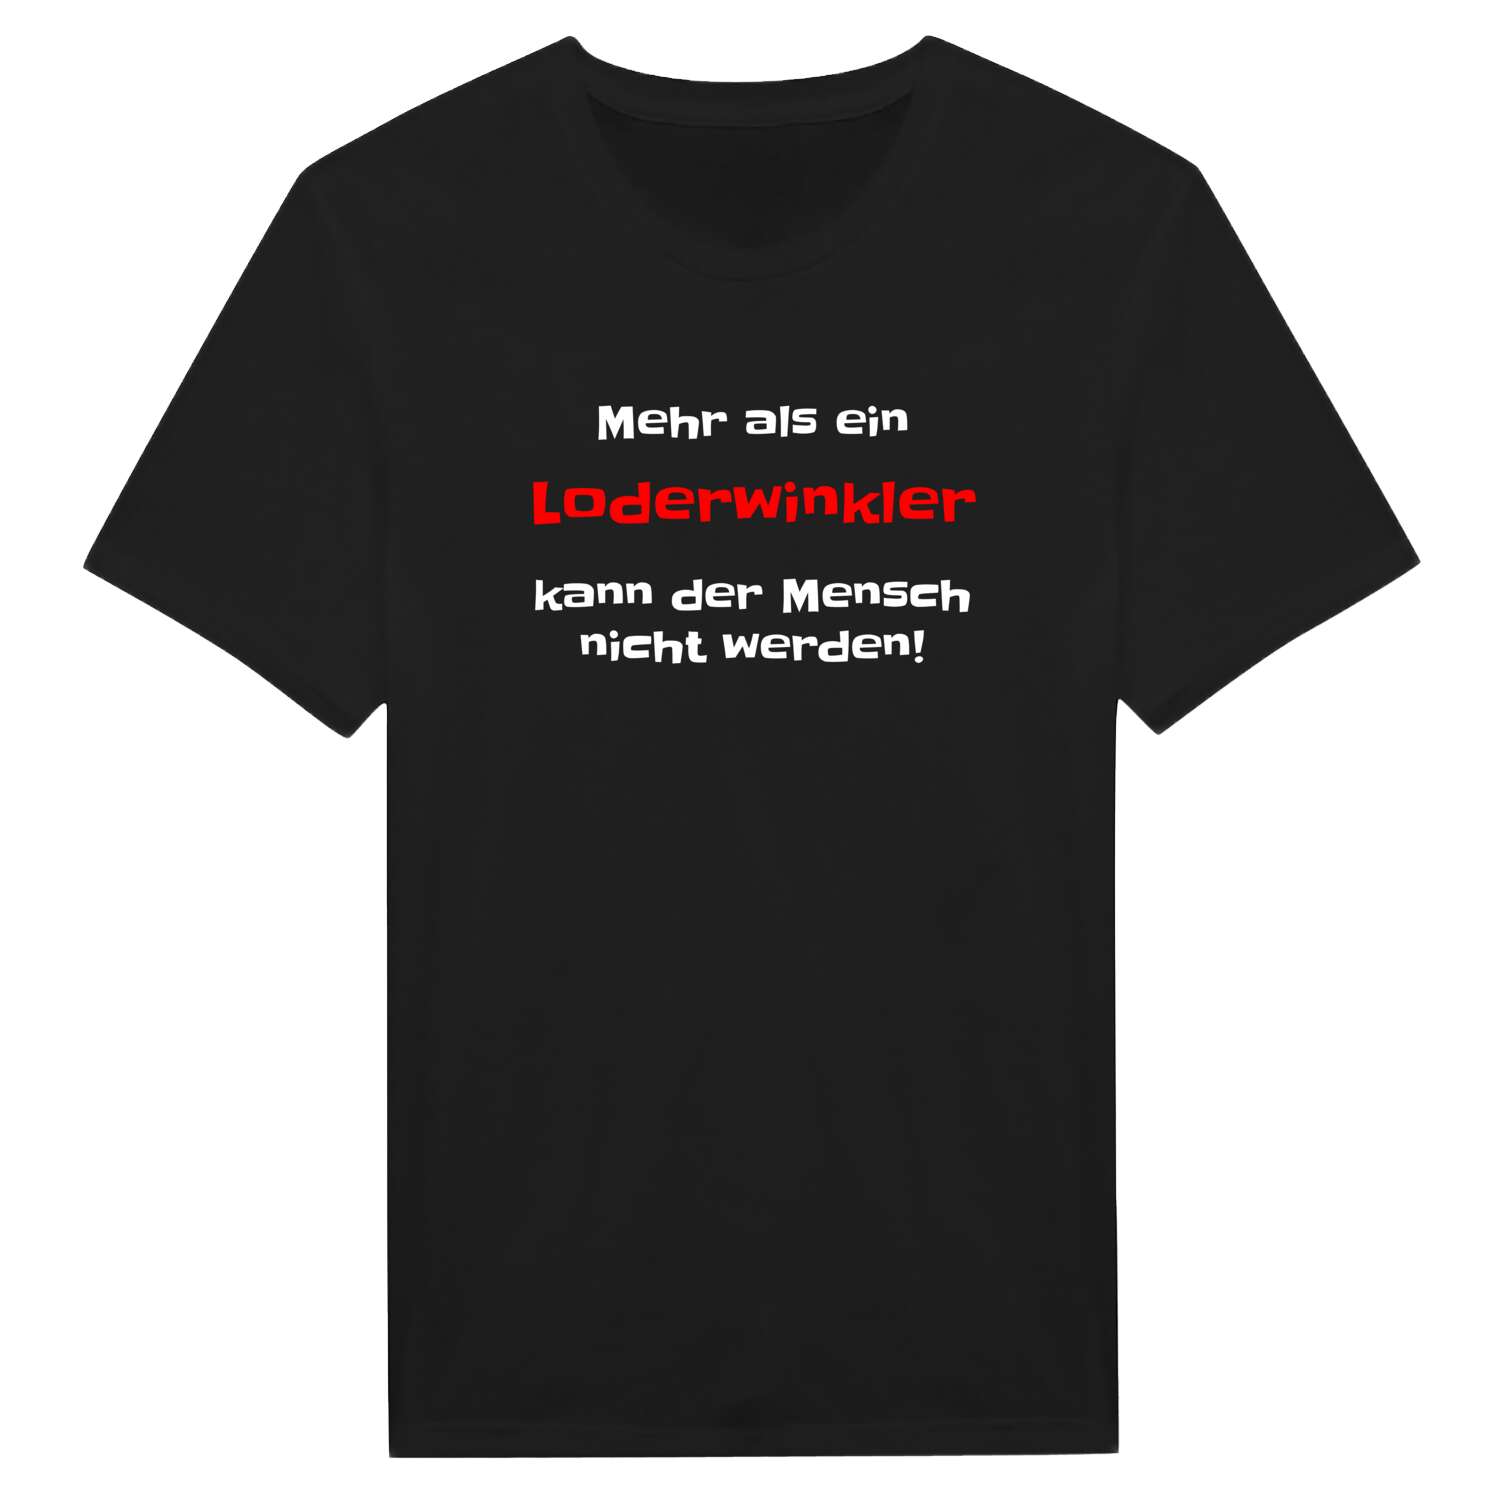 Loderwinkl T-Shirt »Mehr als ein«